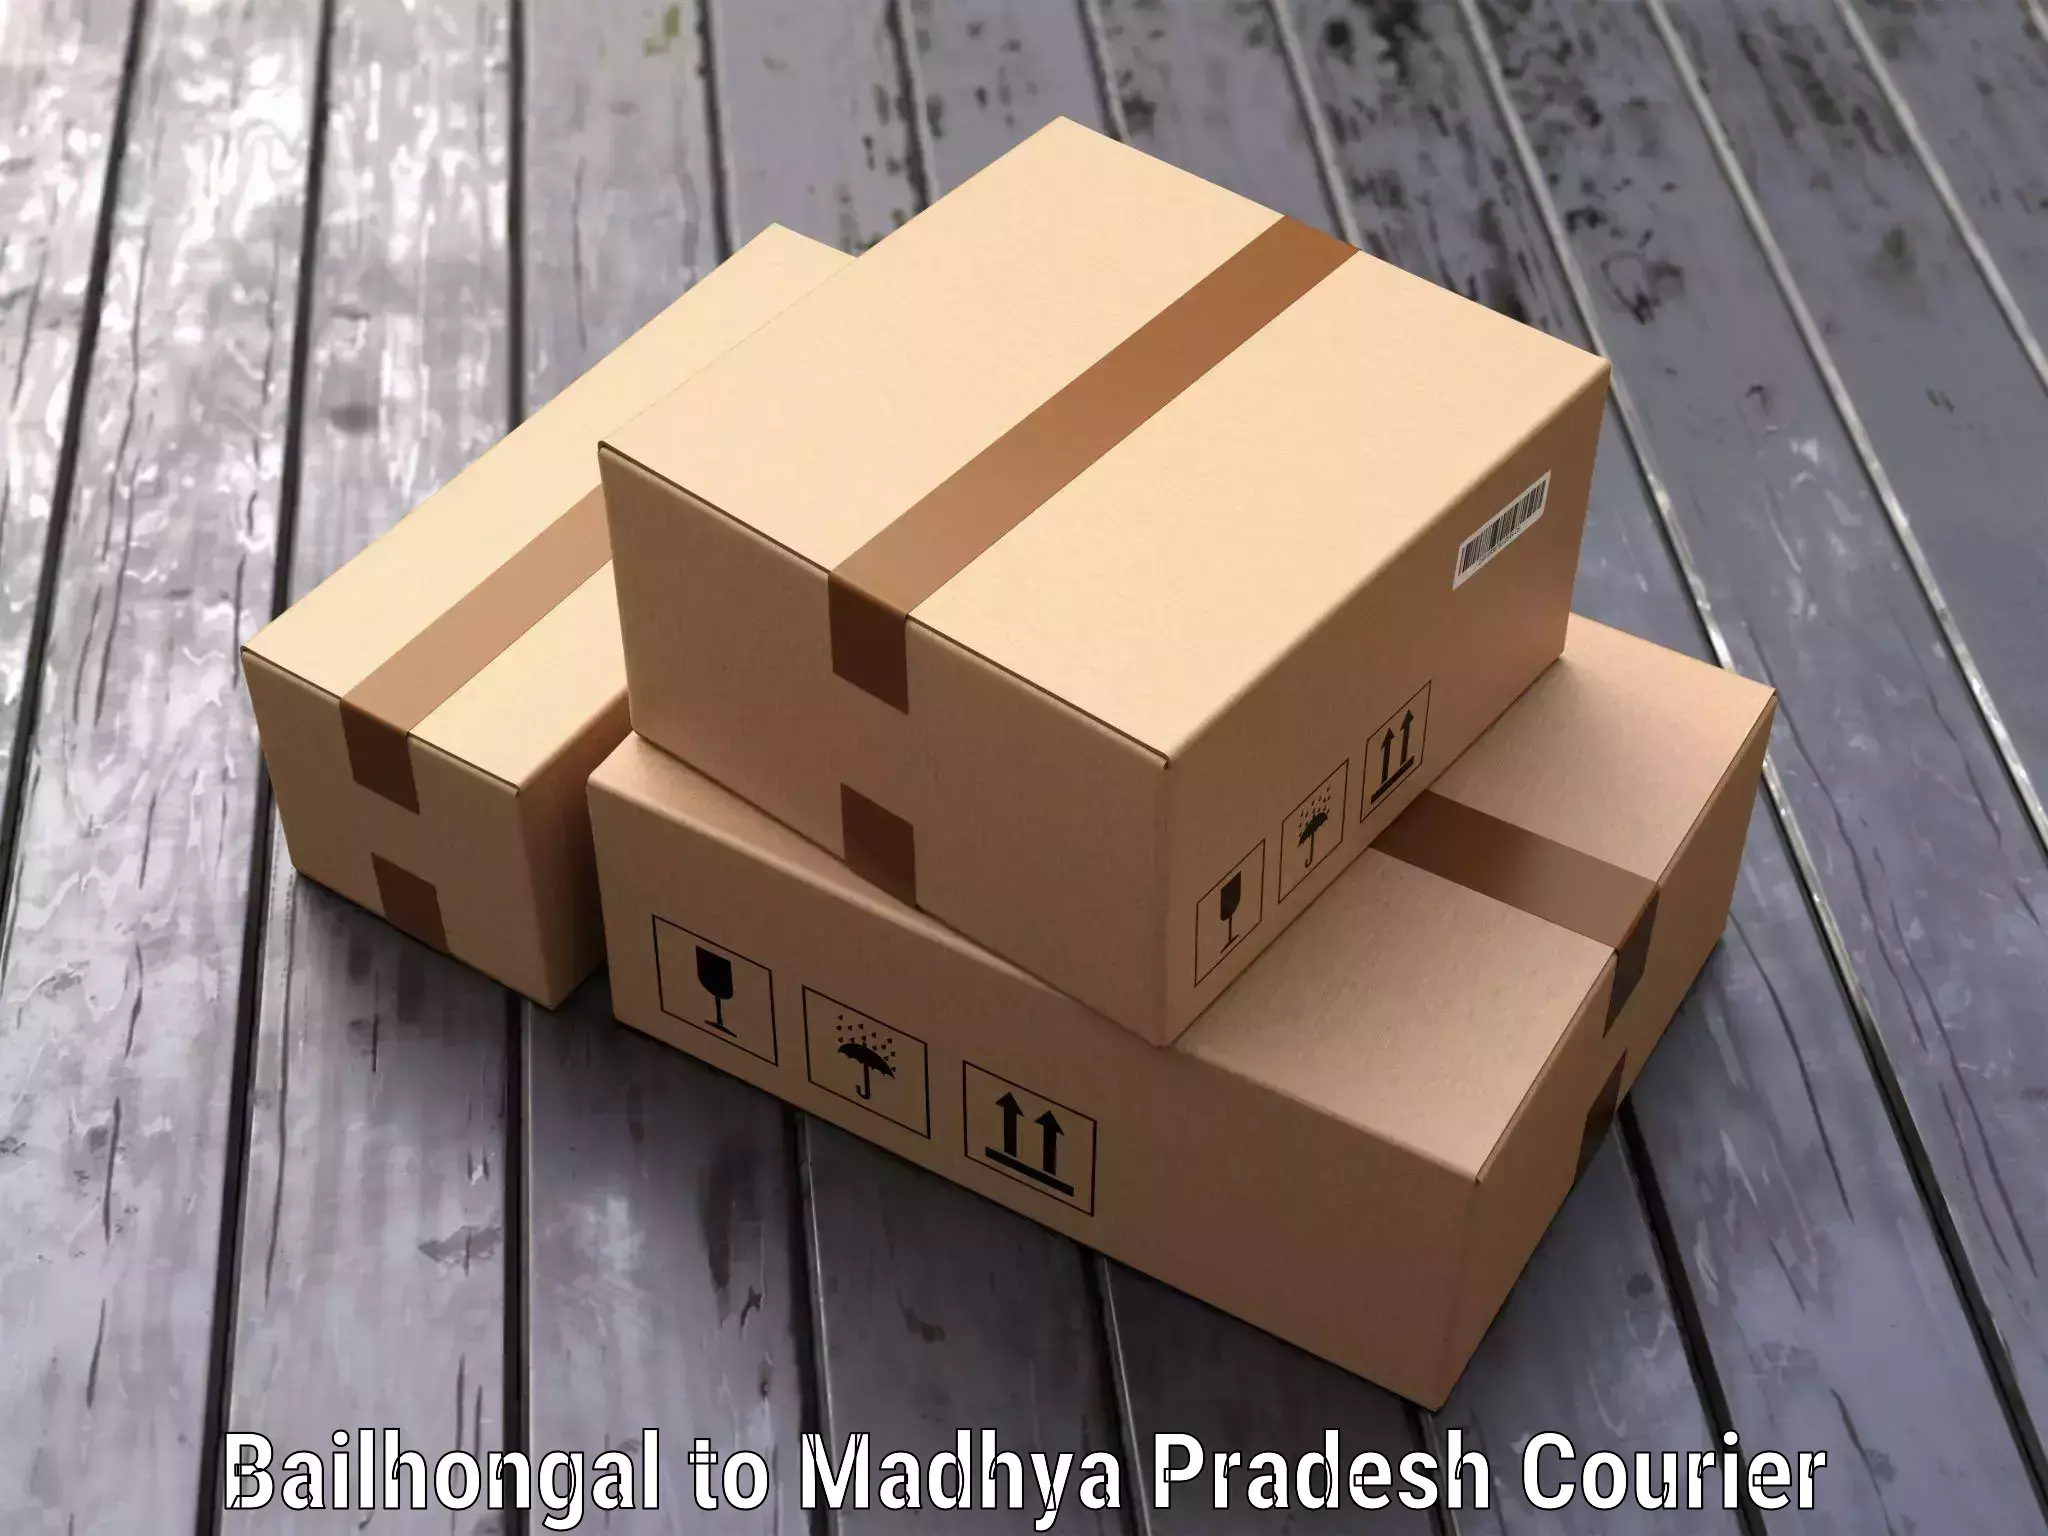 Baggage transport technology Bailhongal to Madhya Pradesh